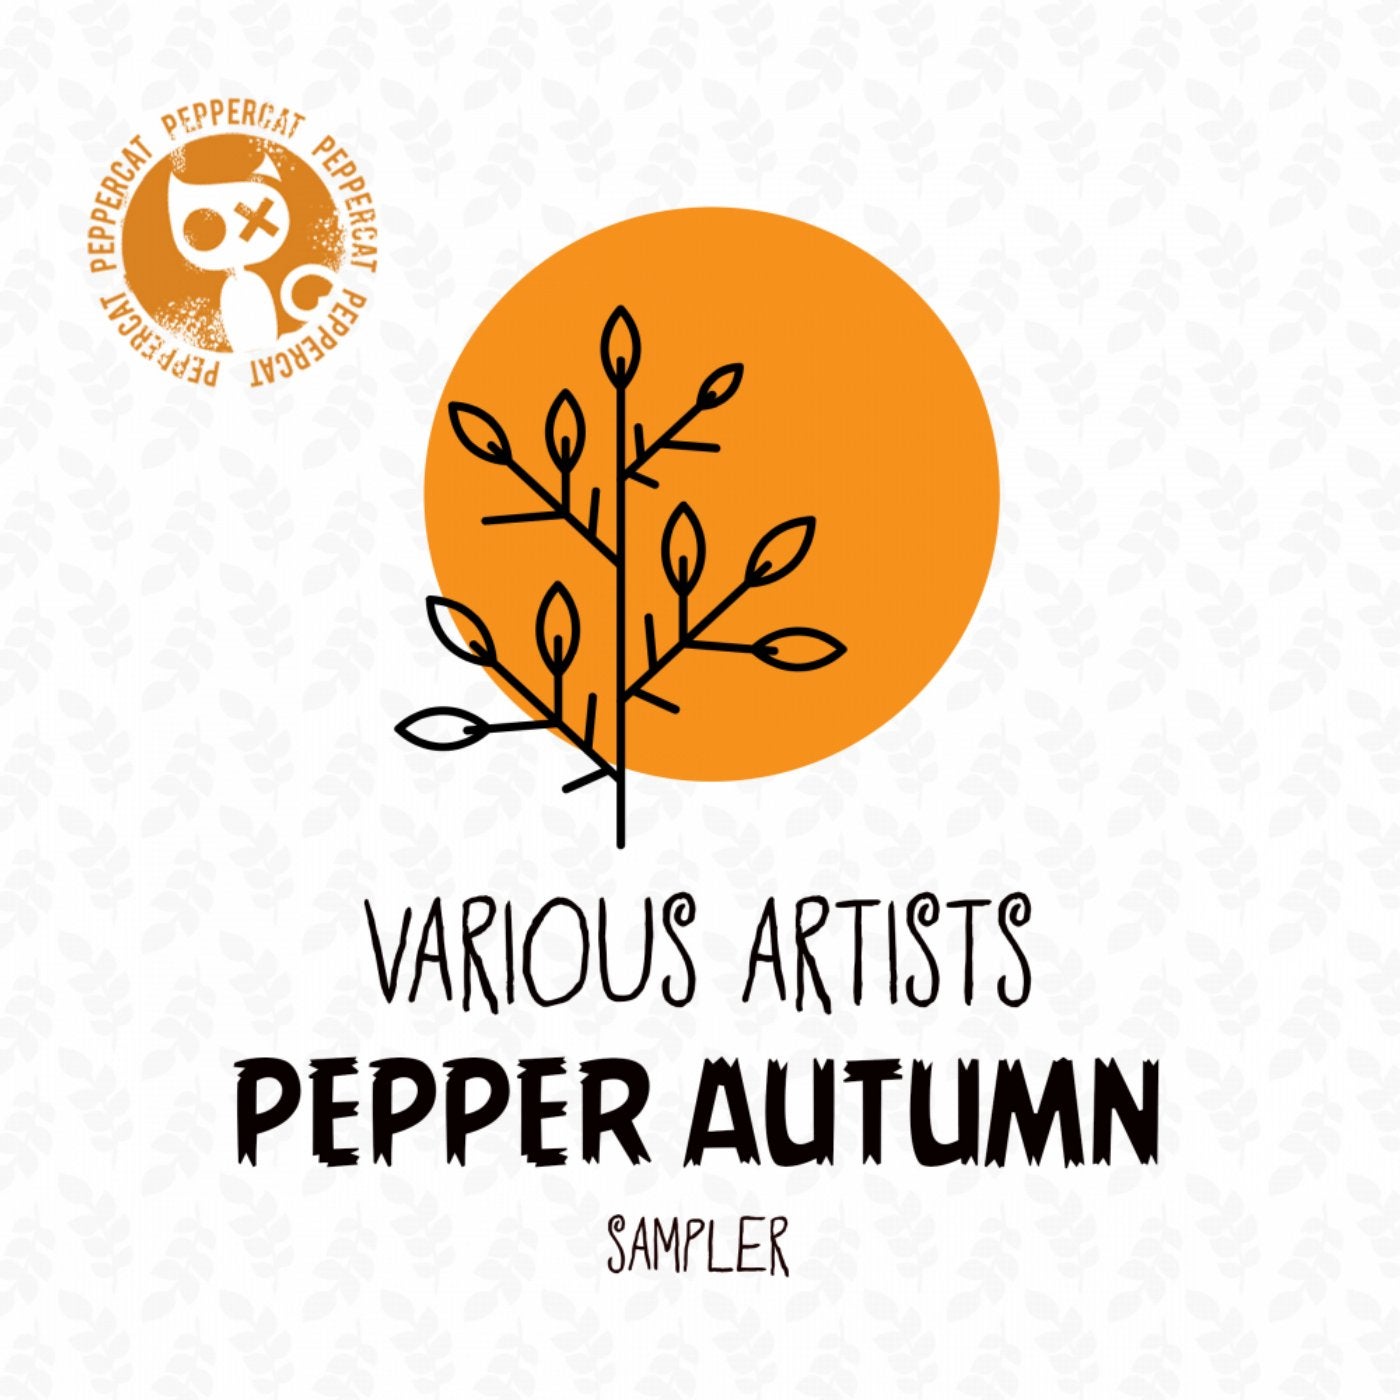 Pepper Autumn Sampler